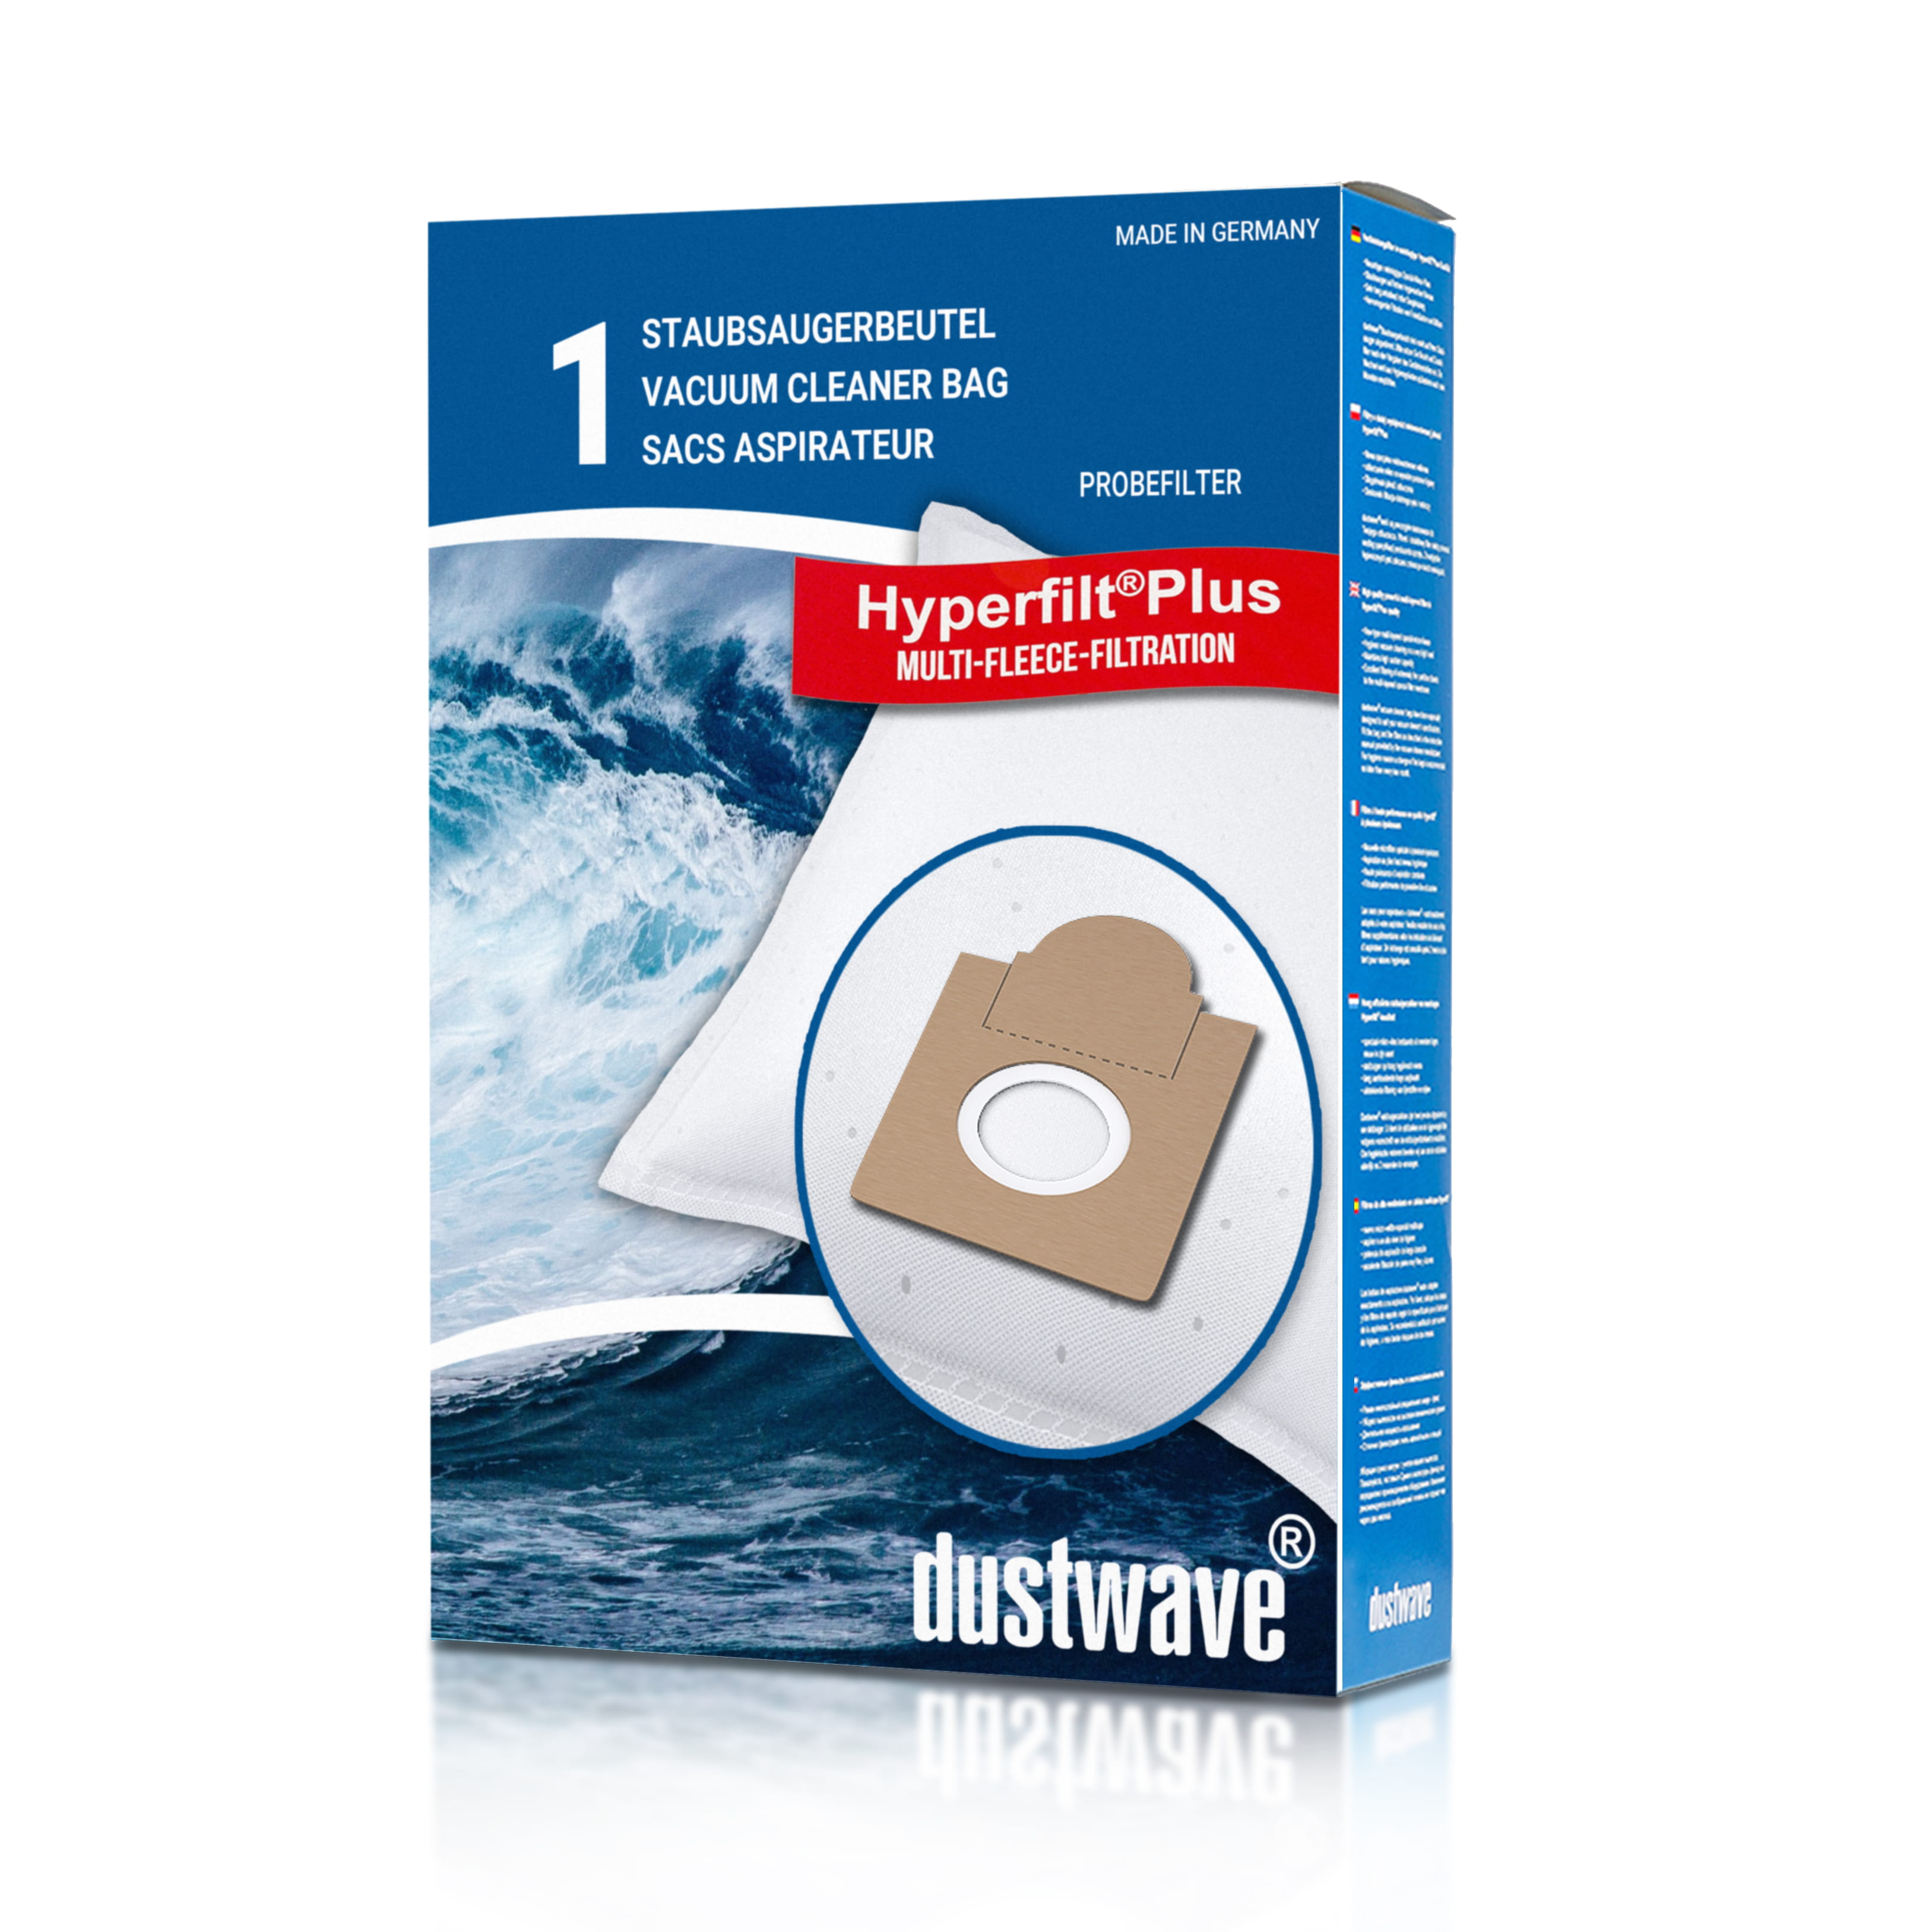 Dustwave® 1 Staubsaugerbeutel für Brinkmann Topline 1300 - hocheffizient, mehrlagiges Mikrovlies mit Hygieneverschluss - Made in Germany